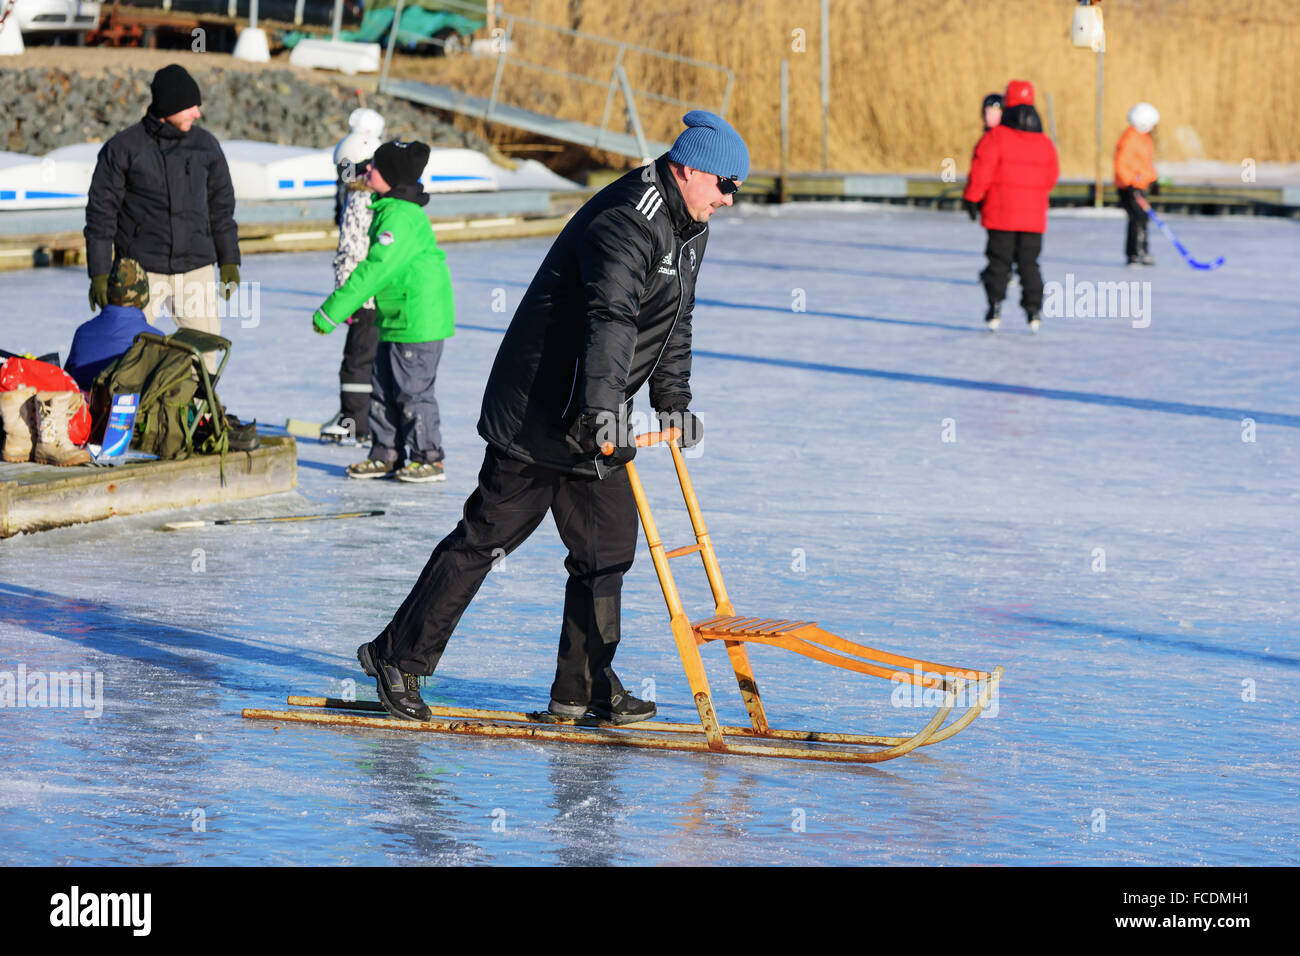 Listerby, Suecia - Enero 17, 2016: Desconocida macho adulto en el mar de hielo con un kicksled o chispa. Las personas activas havin diversión sobre hielo en b Foto de stock